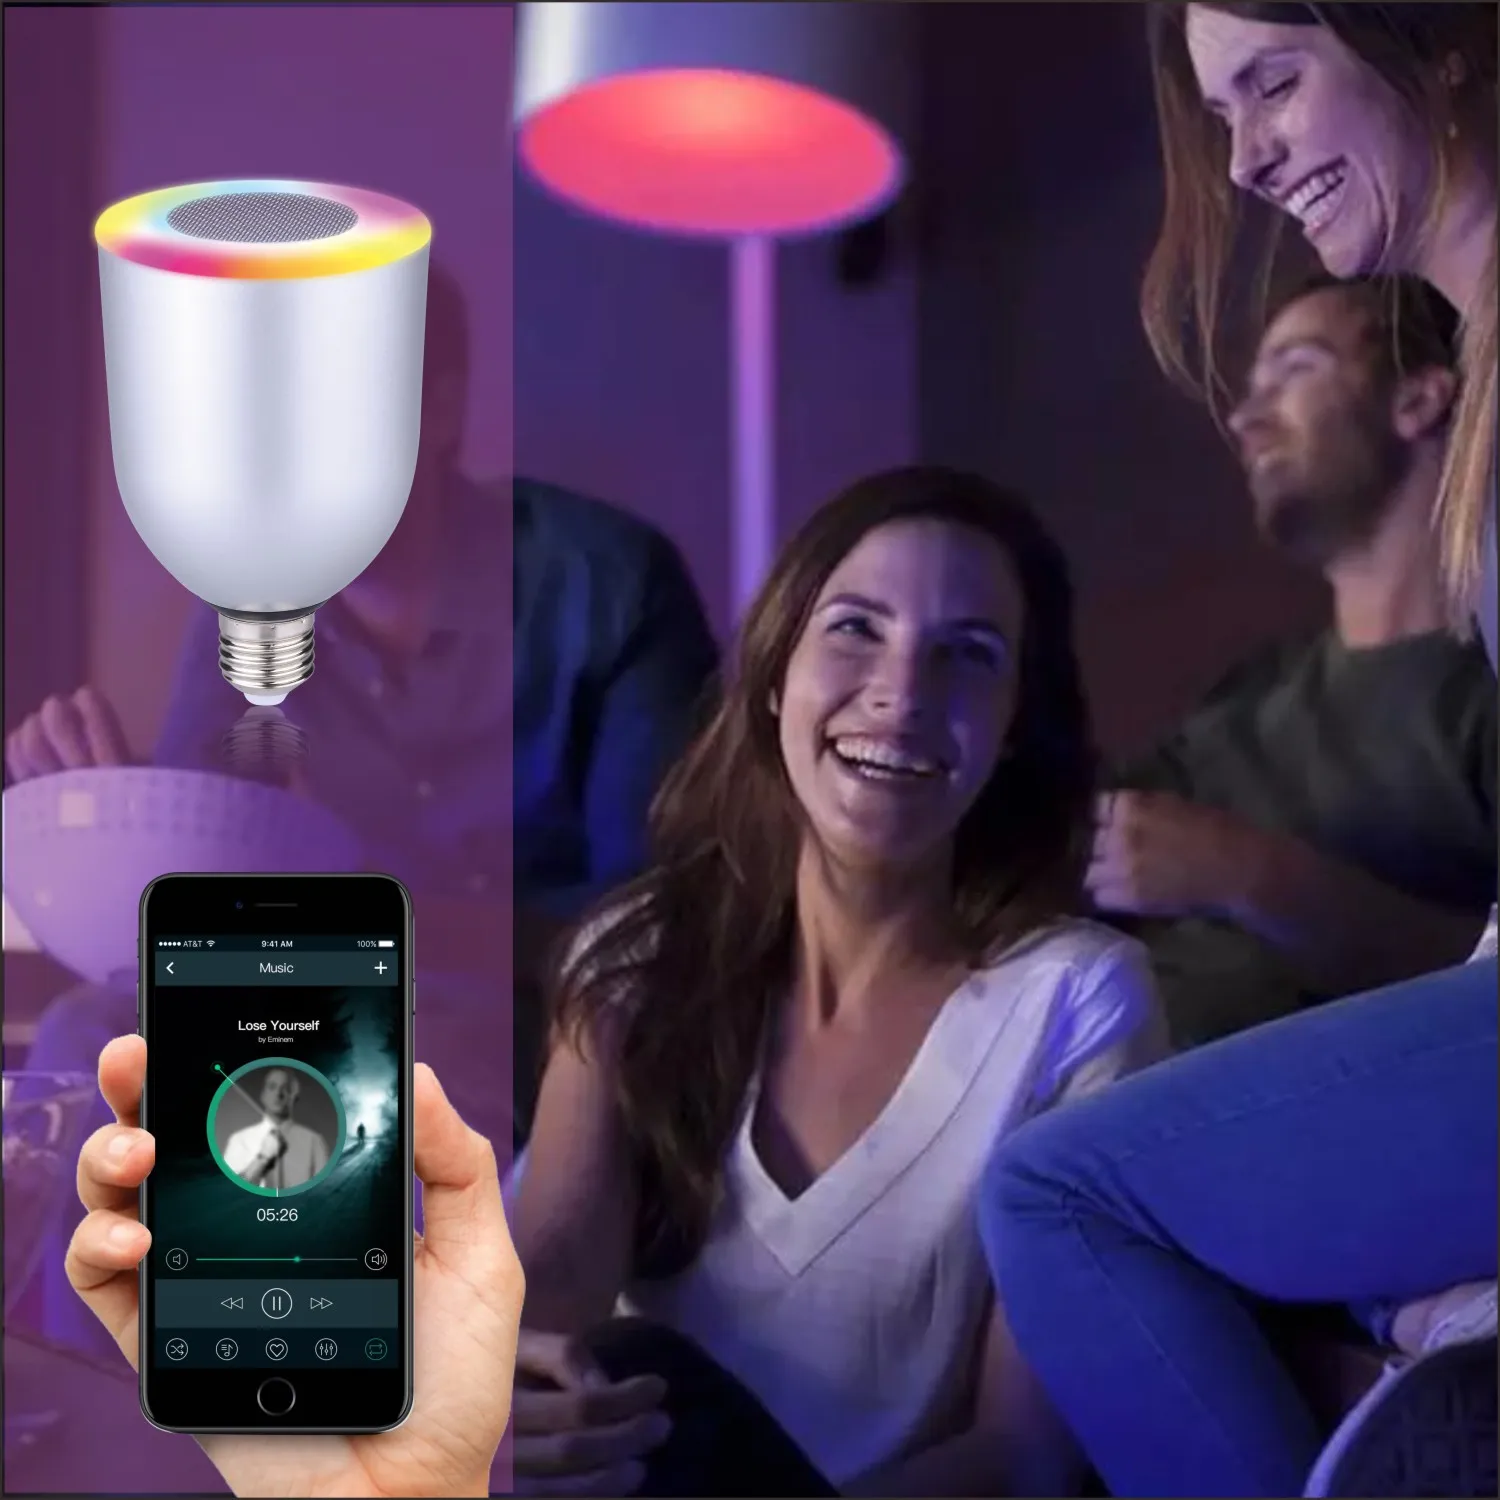 Haut-parleur Bluetooth E27 Lampe colorée pour IOS Android Smart Phone Lampe de lecteur de musique PC Couleurs réglables sans fil par DHL